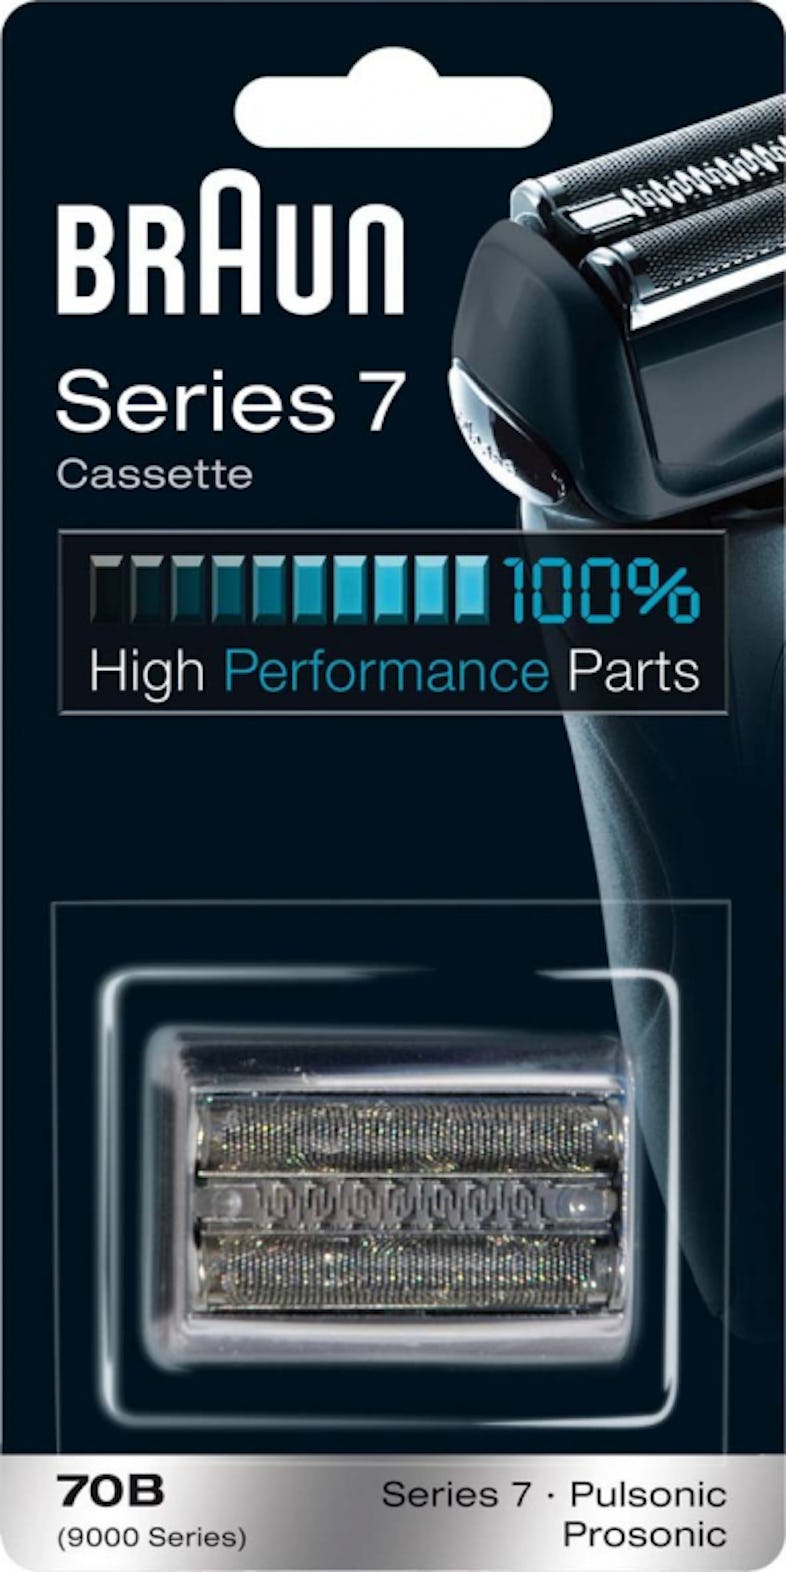 Braun Series 7 Elektrorasierer 799cc inkl. 2 Reinigungskartuschen